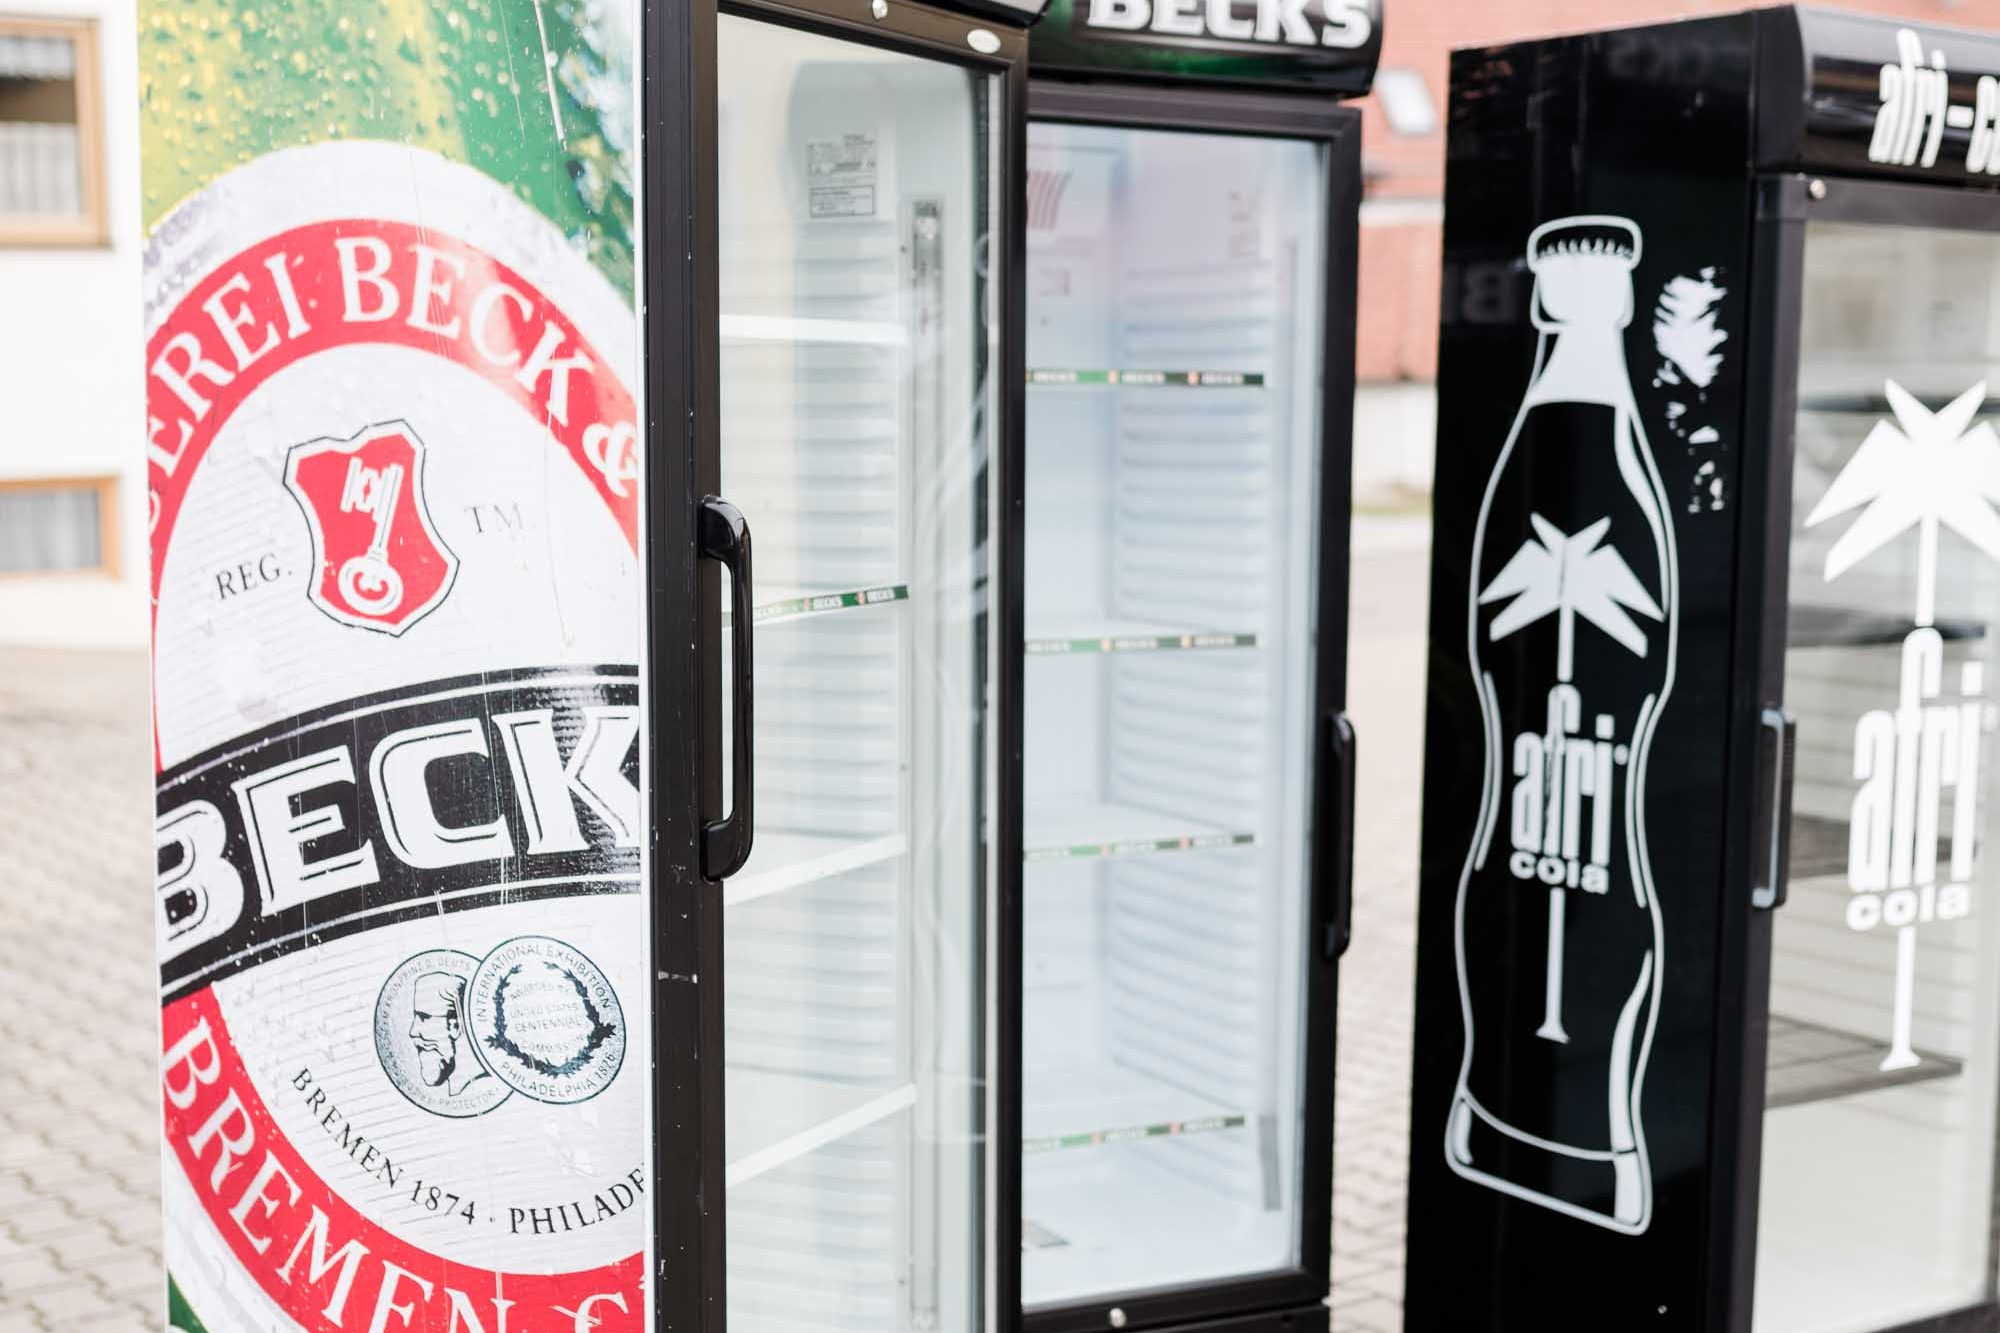 Der Getränkemarkt Getränke Brielbeck in Ascha bietet einen Partyservice an und liefert die Barausstattung für jede Party und jedes Fest.